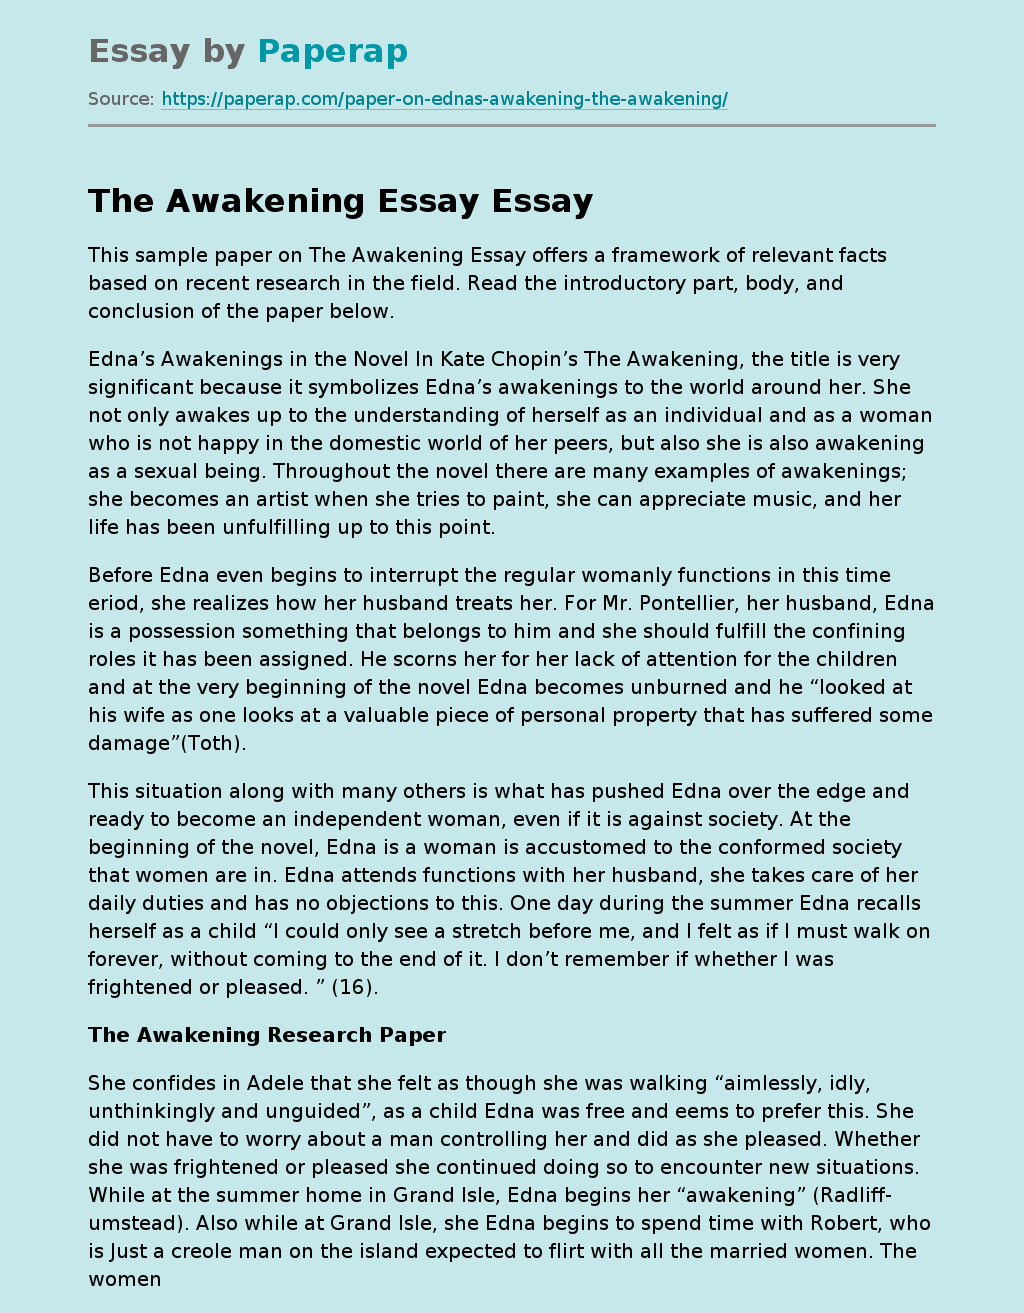 argumentative essay on the awakening